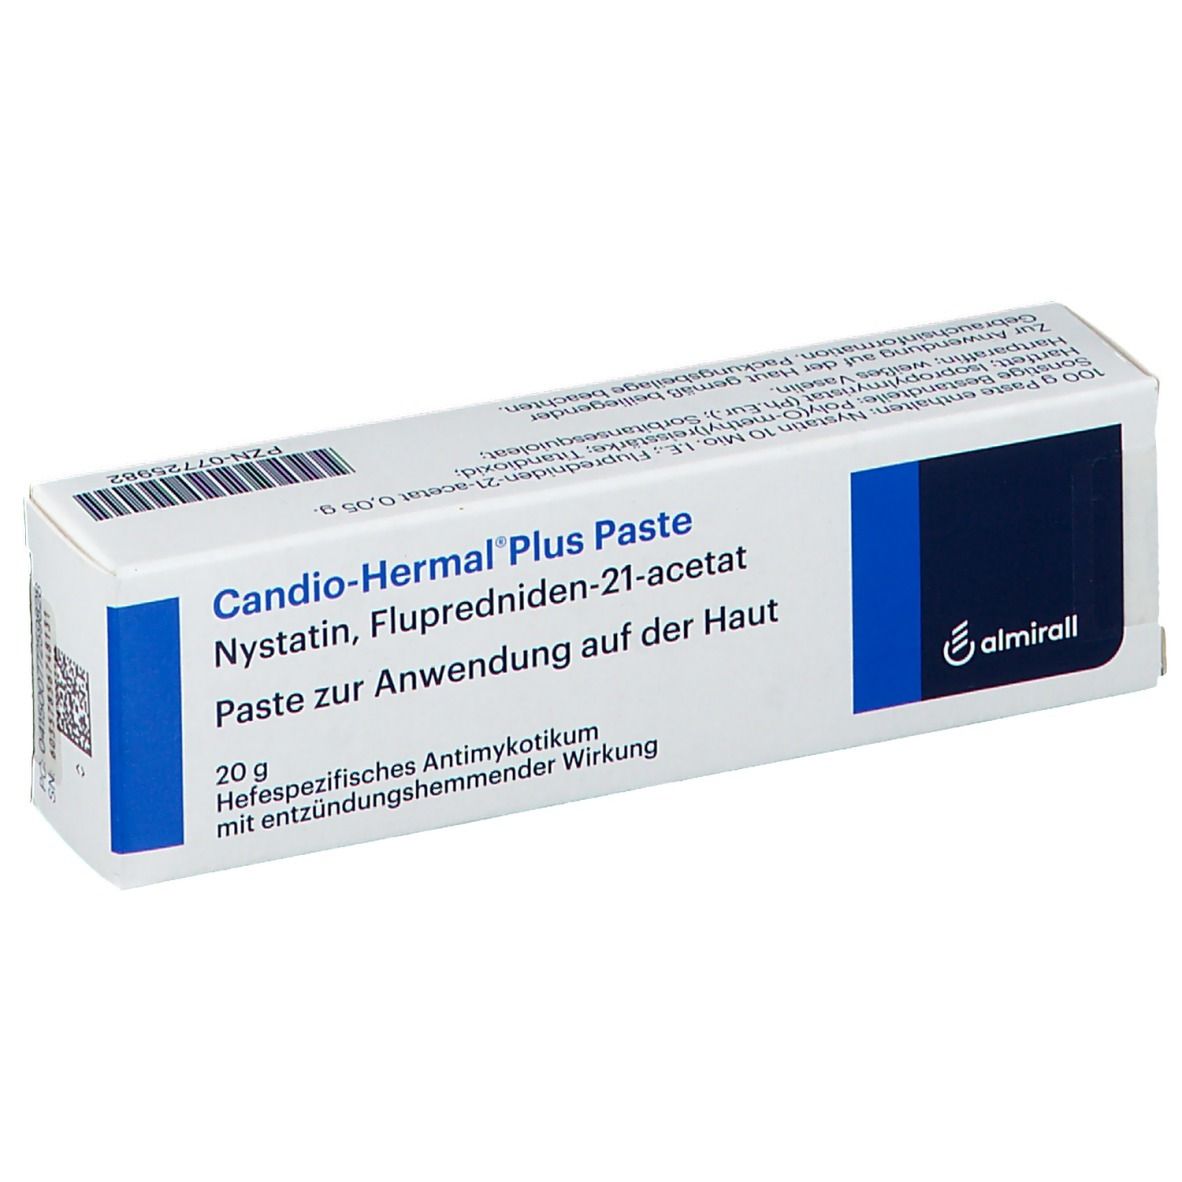 Candio-Hermal® Plus Paste